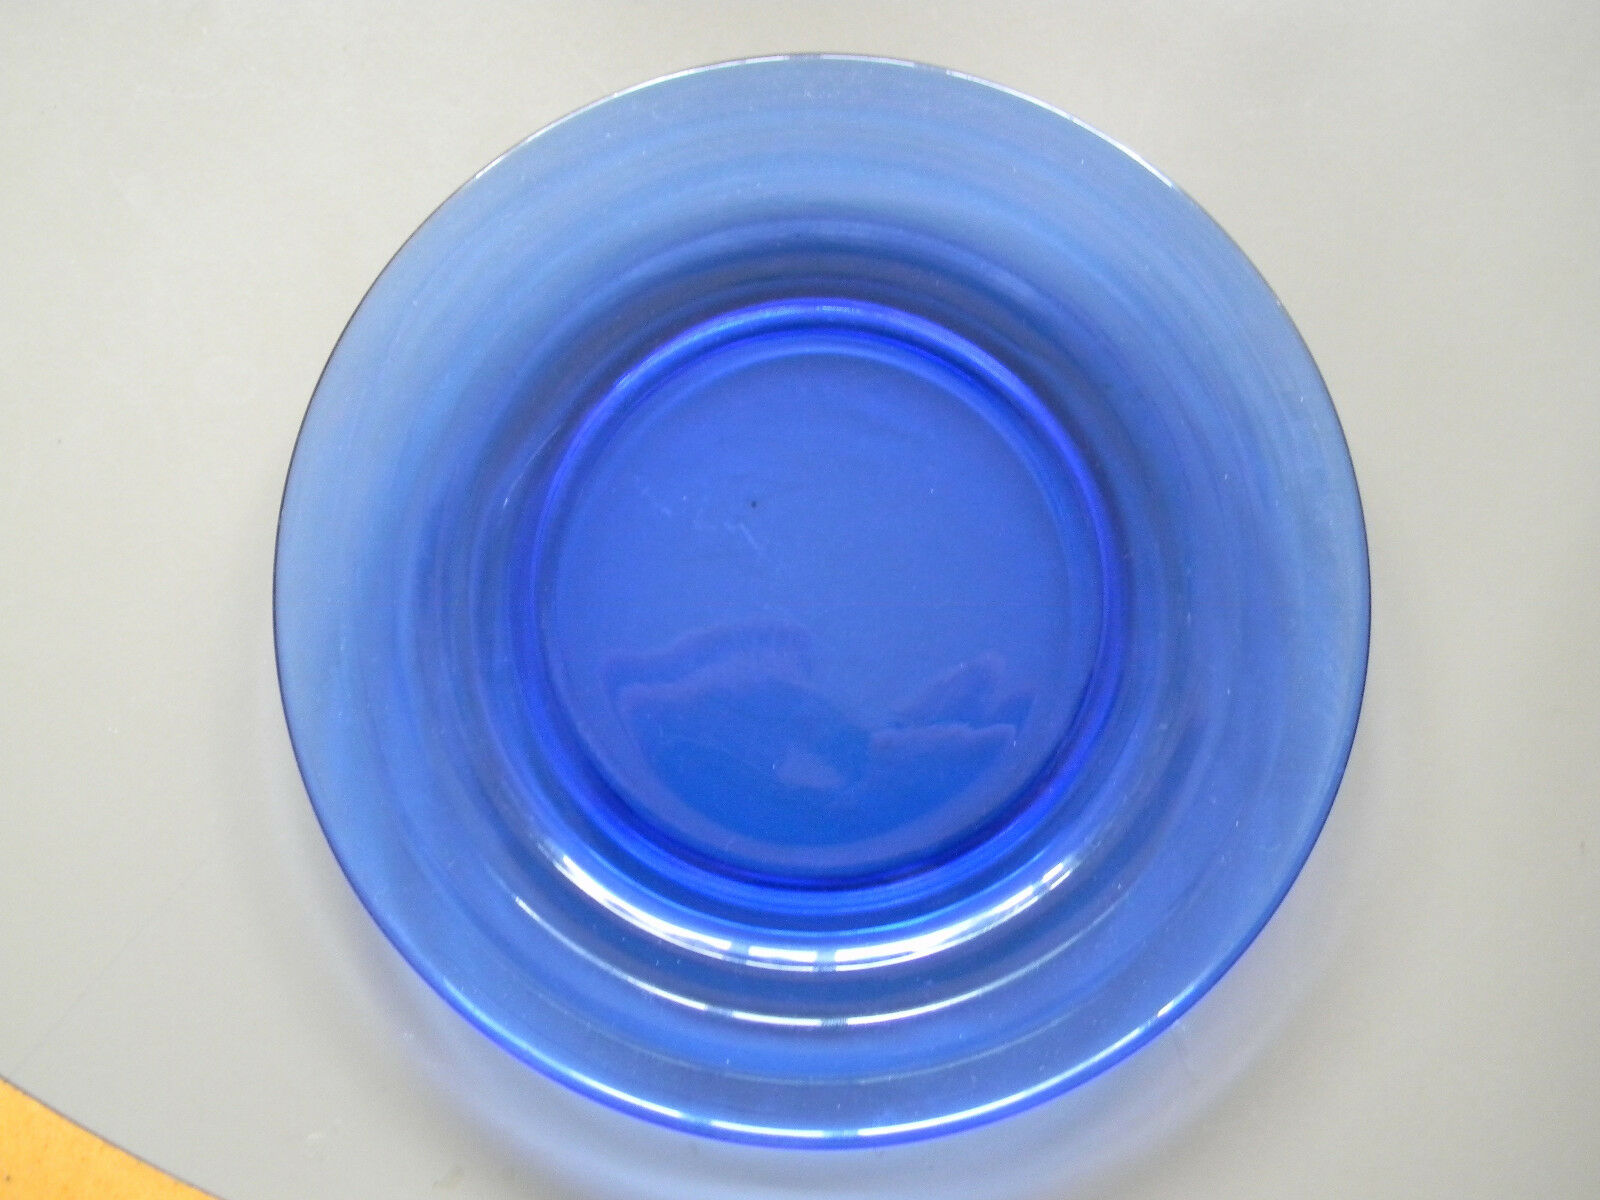 Moderntone Cobalt Blue Luncheon Plate - 7 3/4" Diameter - Hazel Atlas